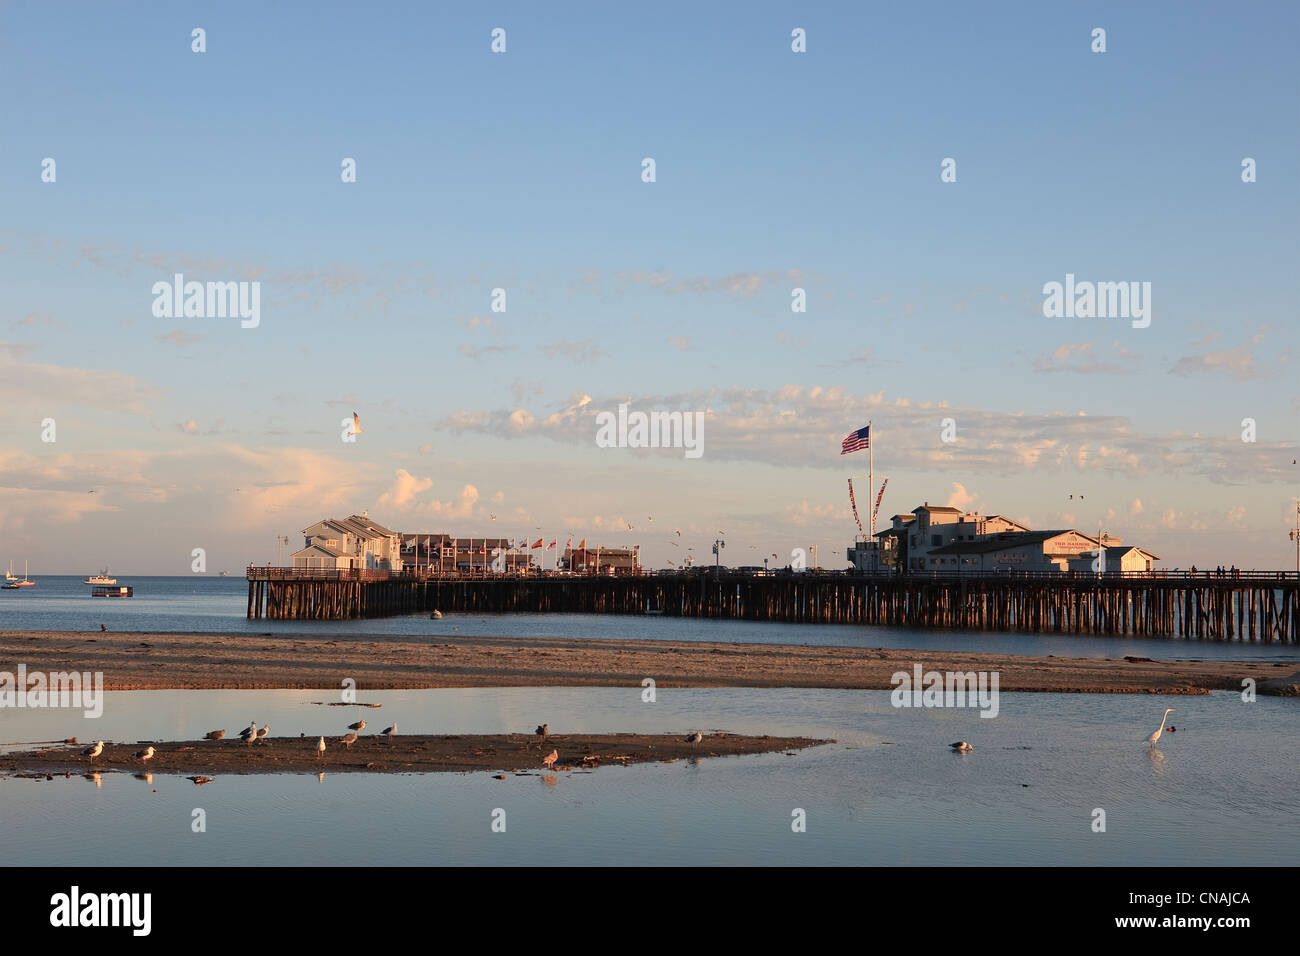 United States, California, Santa Barbara, Stearns Wharf au coucher du soleil Banque D'Images